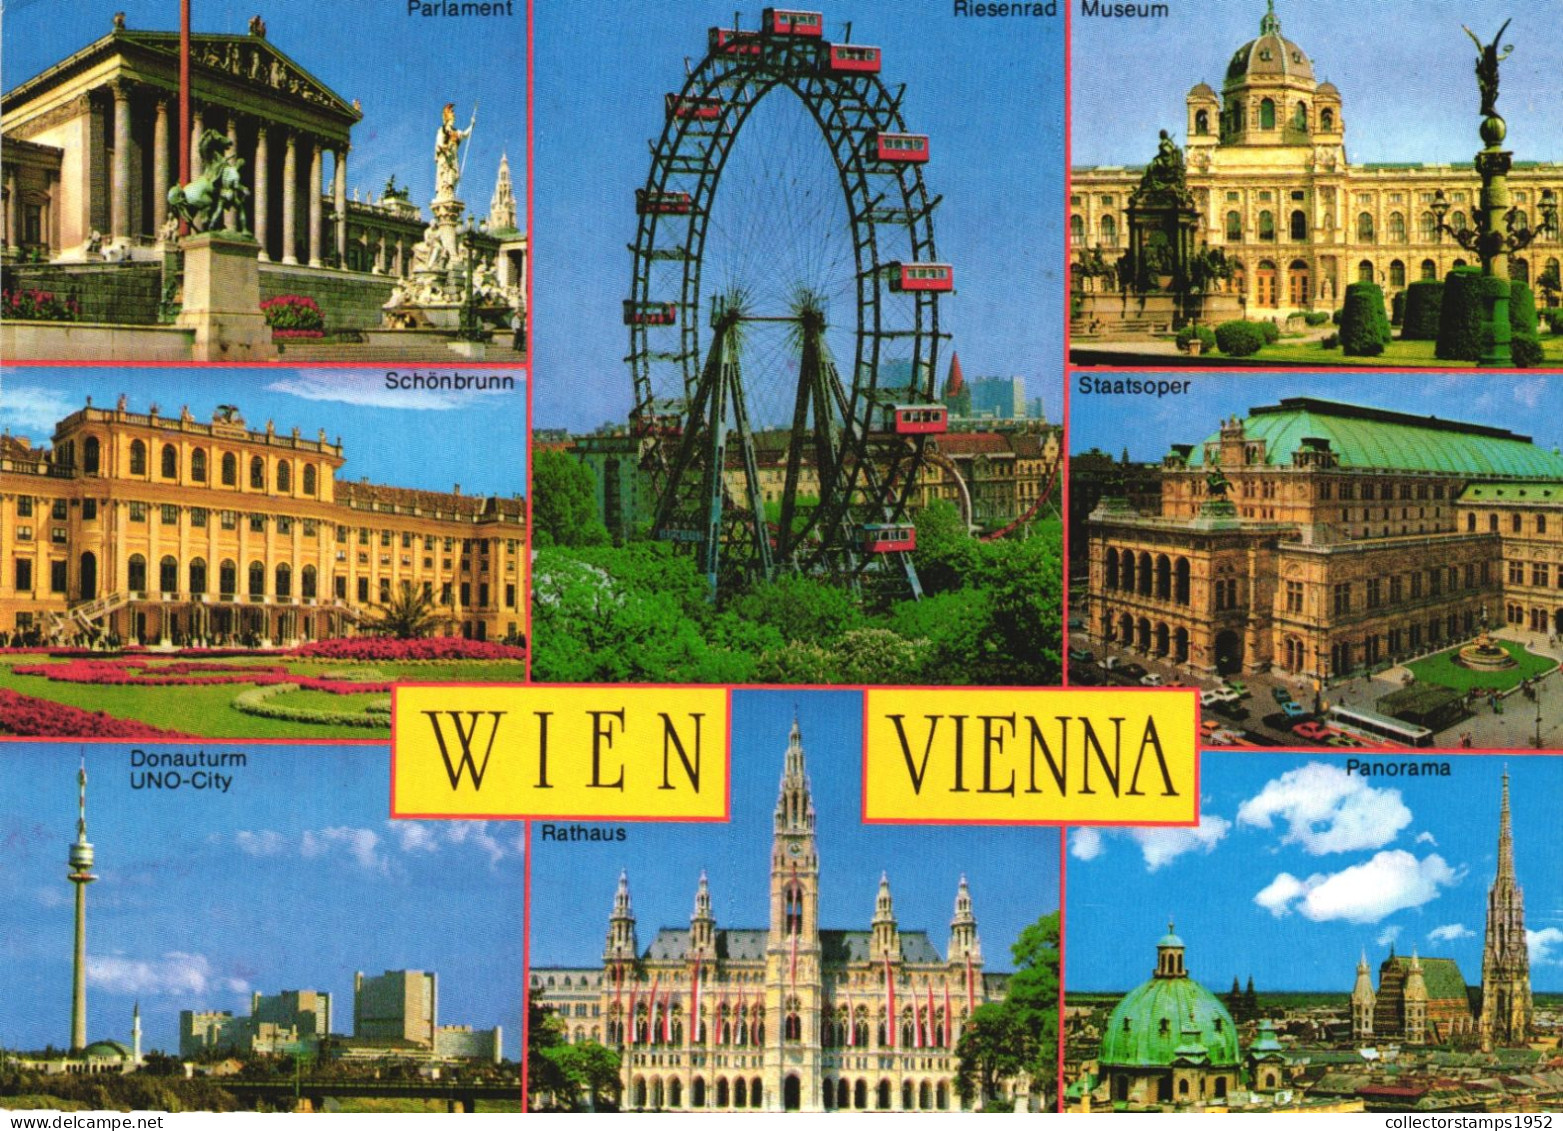 VIENNA, MULTIPLE VIEWS, ARCHITECTURE, STATUE, GIANT WHEEL, PARK, TOWER, AUSTRIA, POSTCARD - Vienna Center